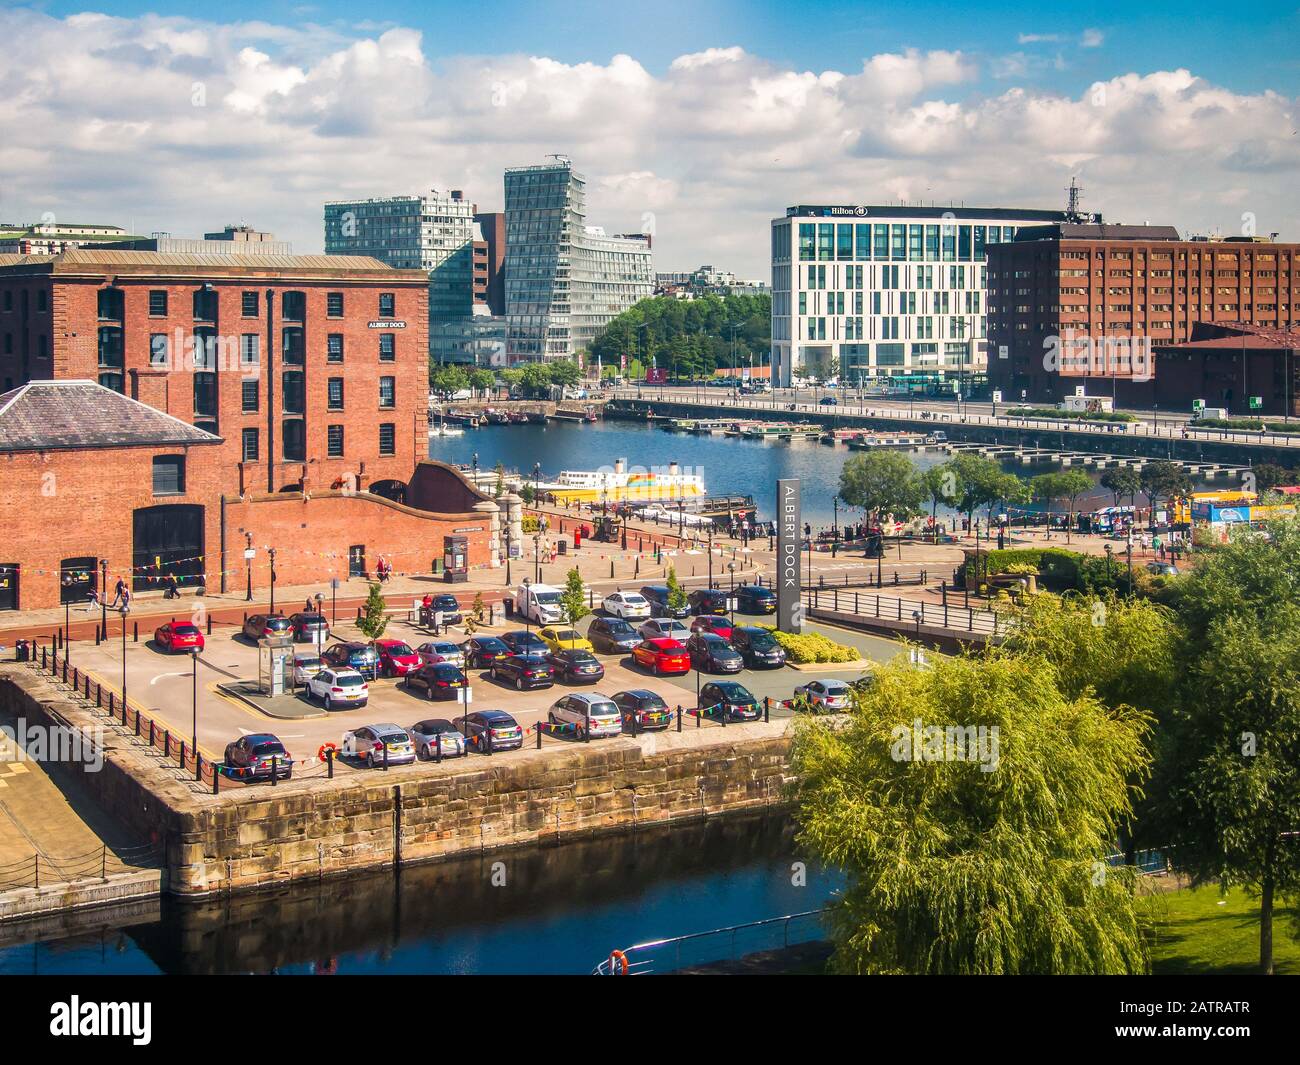 Albert Dock car park and Salthouse Dock, Liverpool Stock Photo